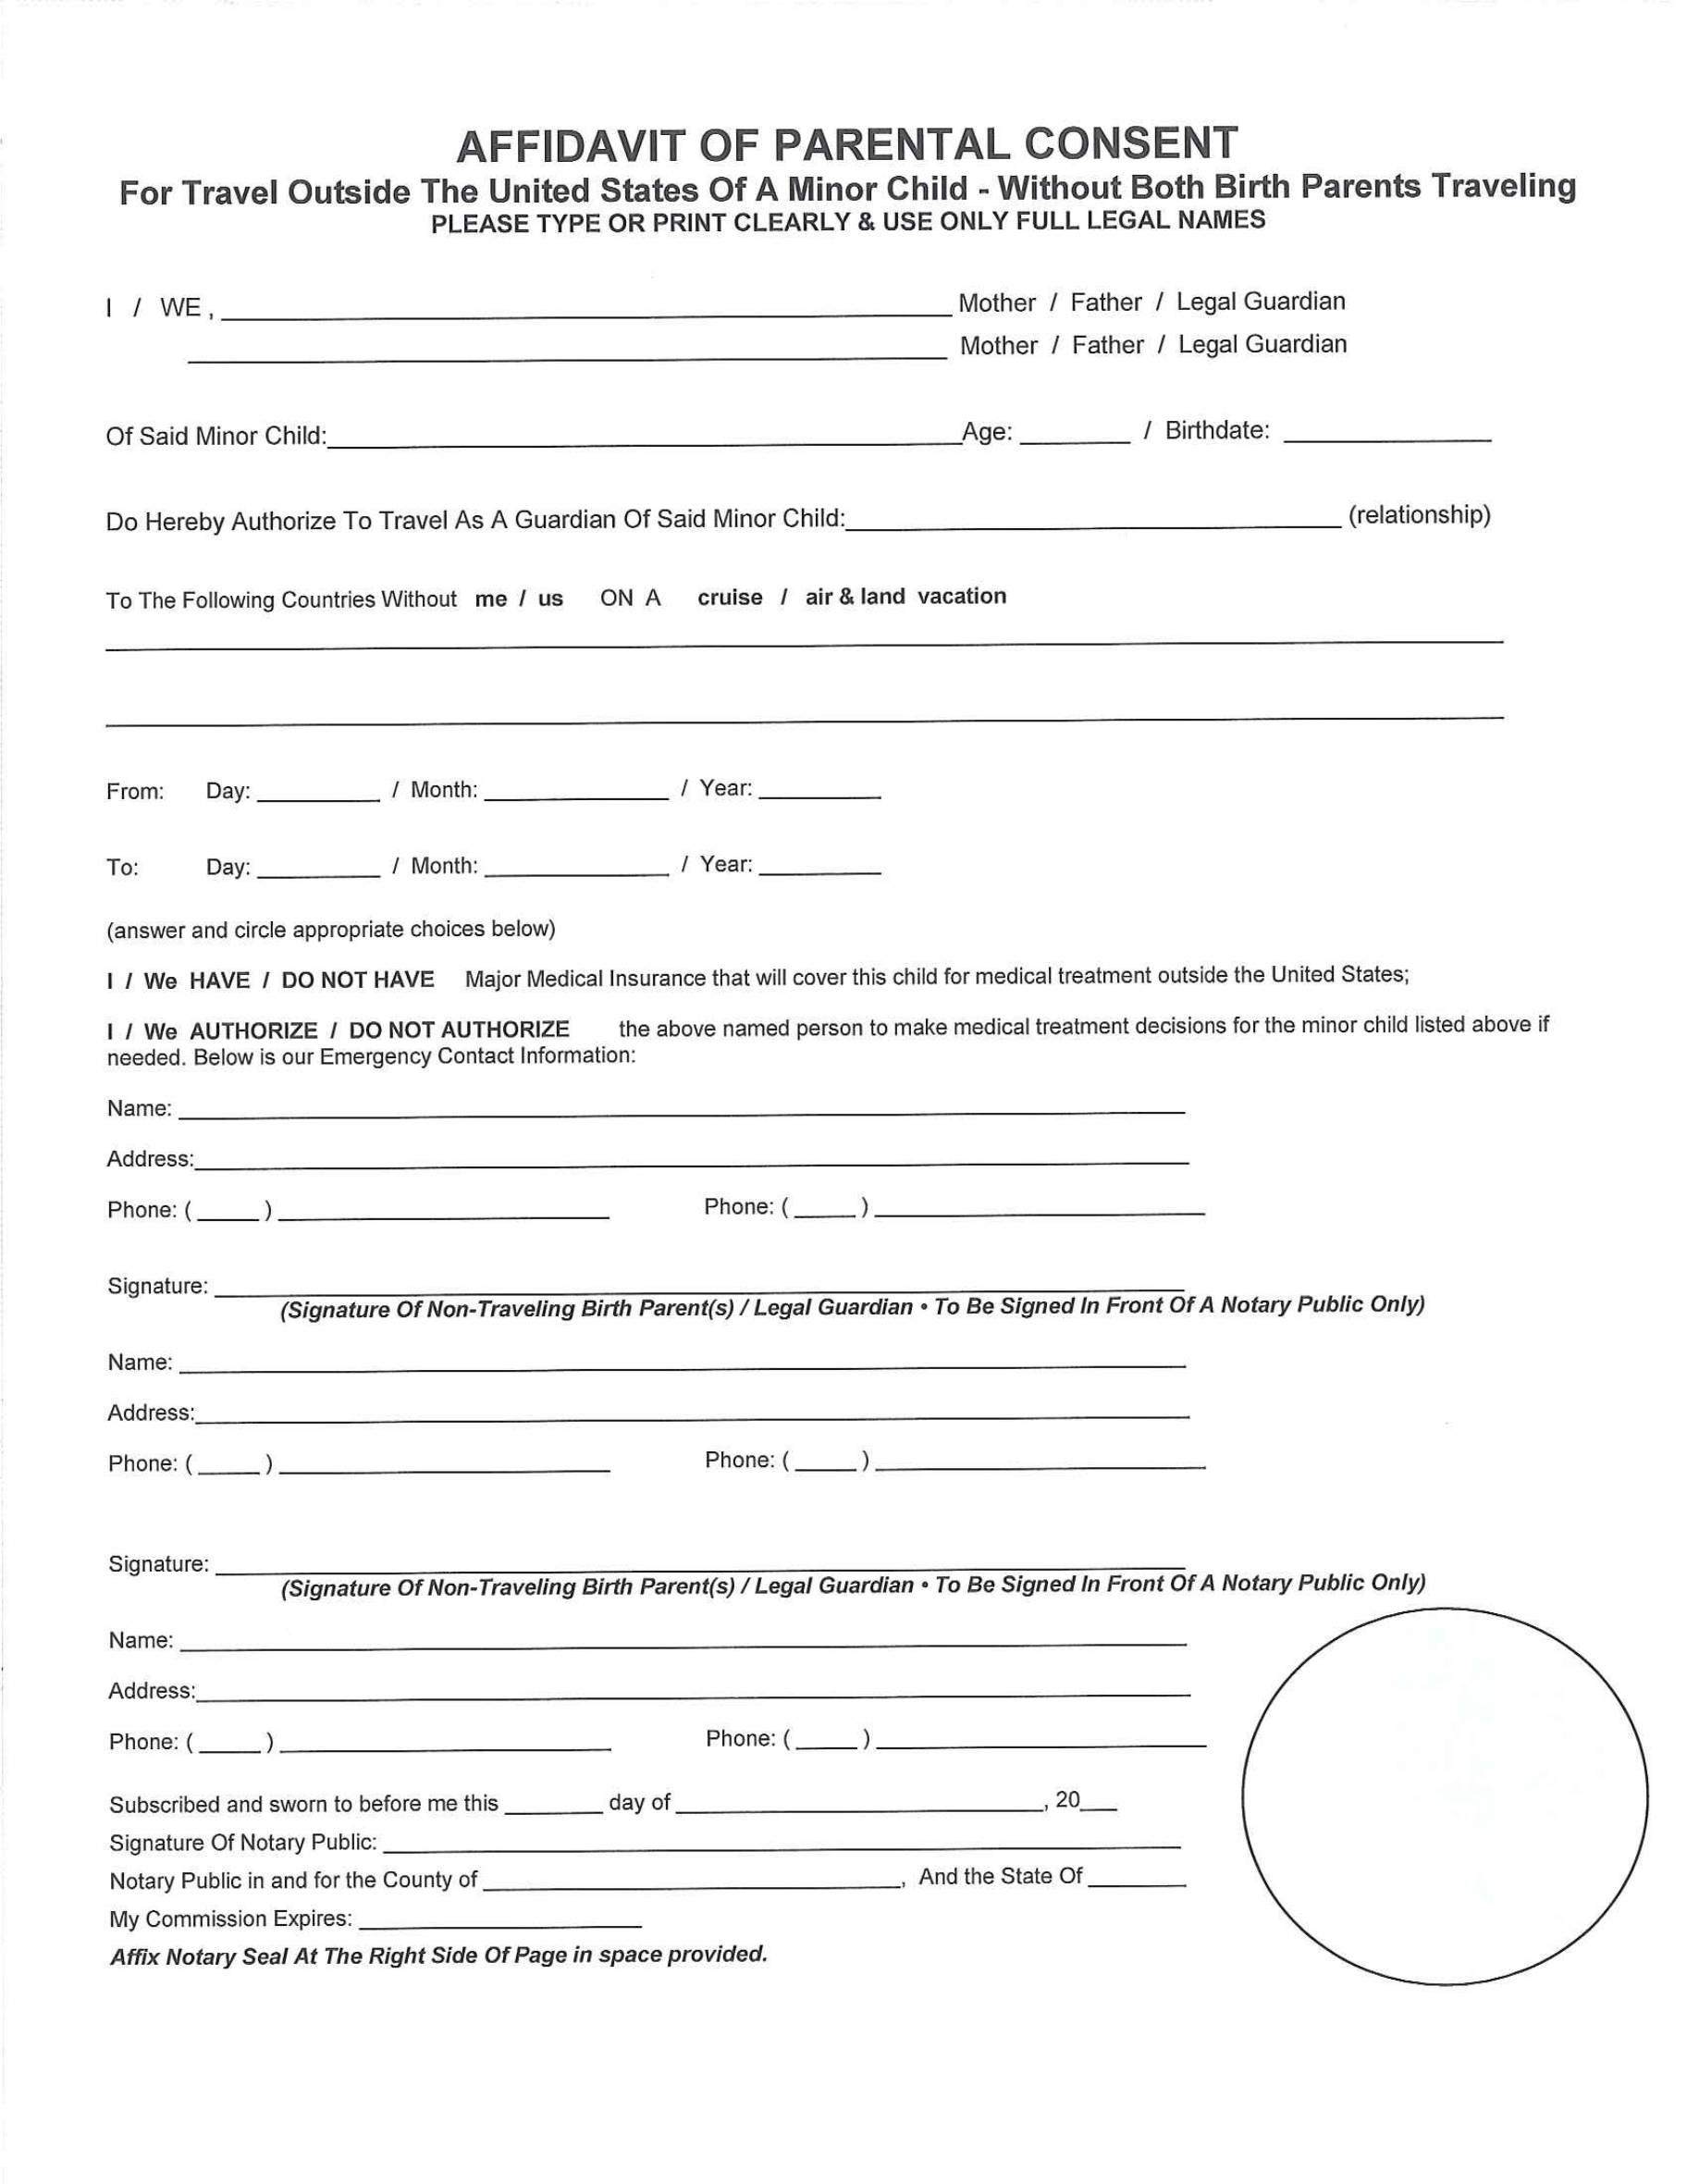 affidavit-for-parental-consent-form-edit-fill-sign-online-handypdf